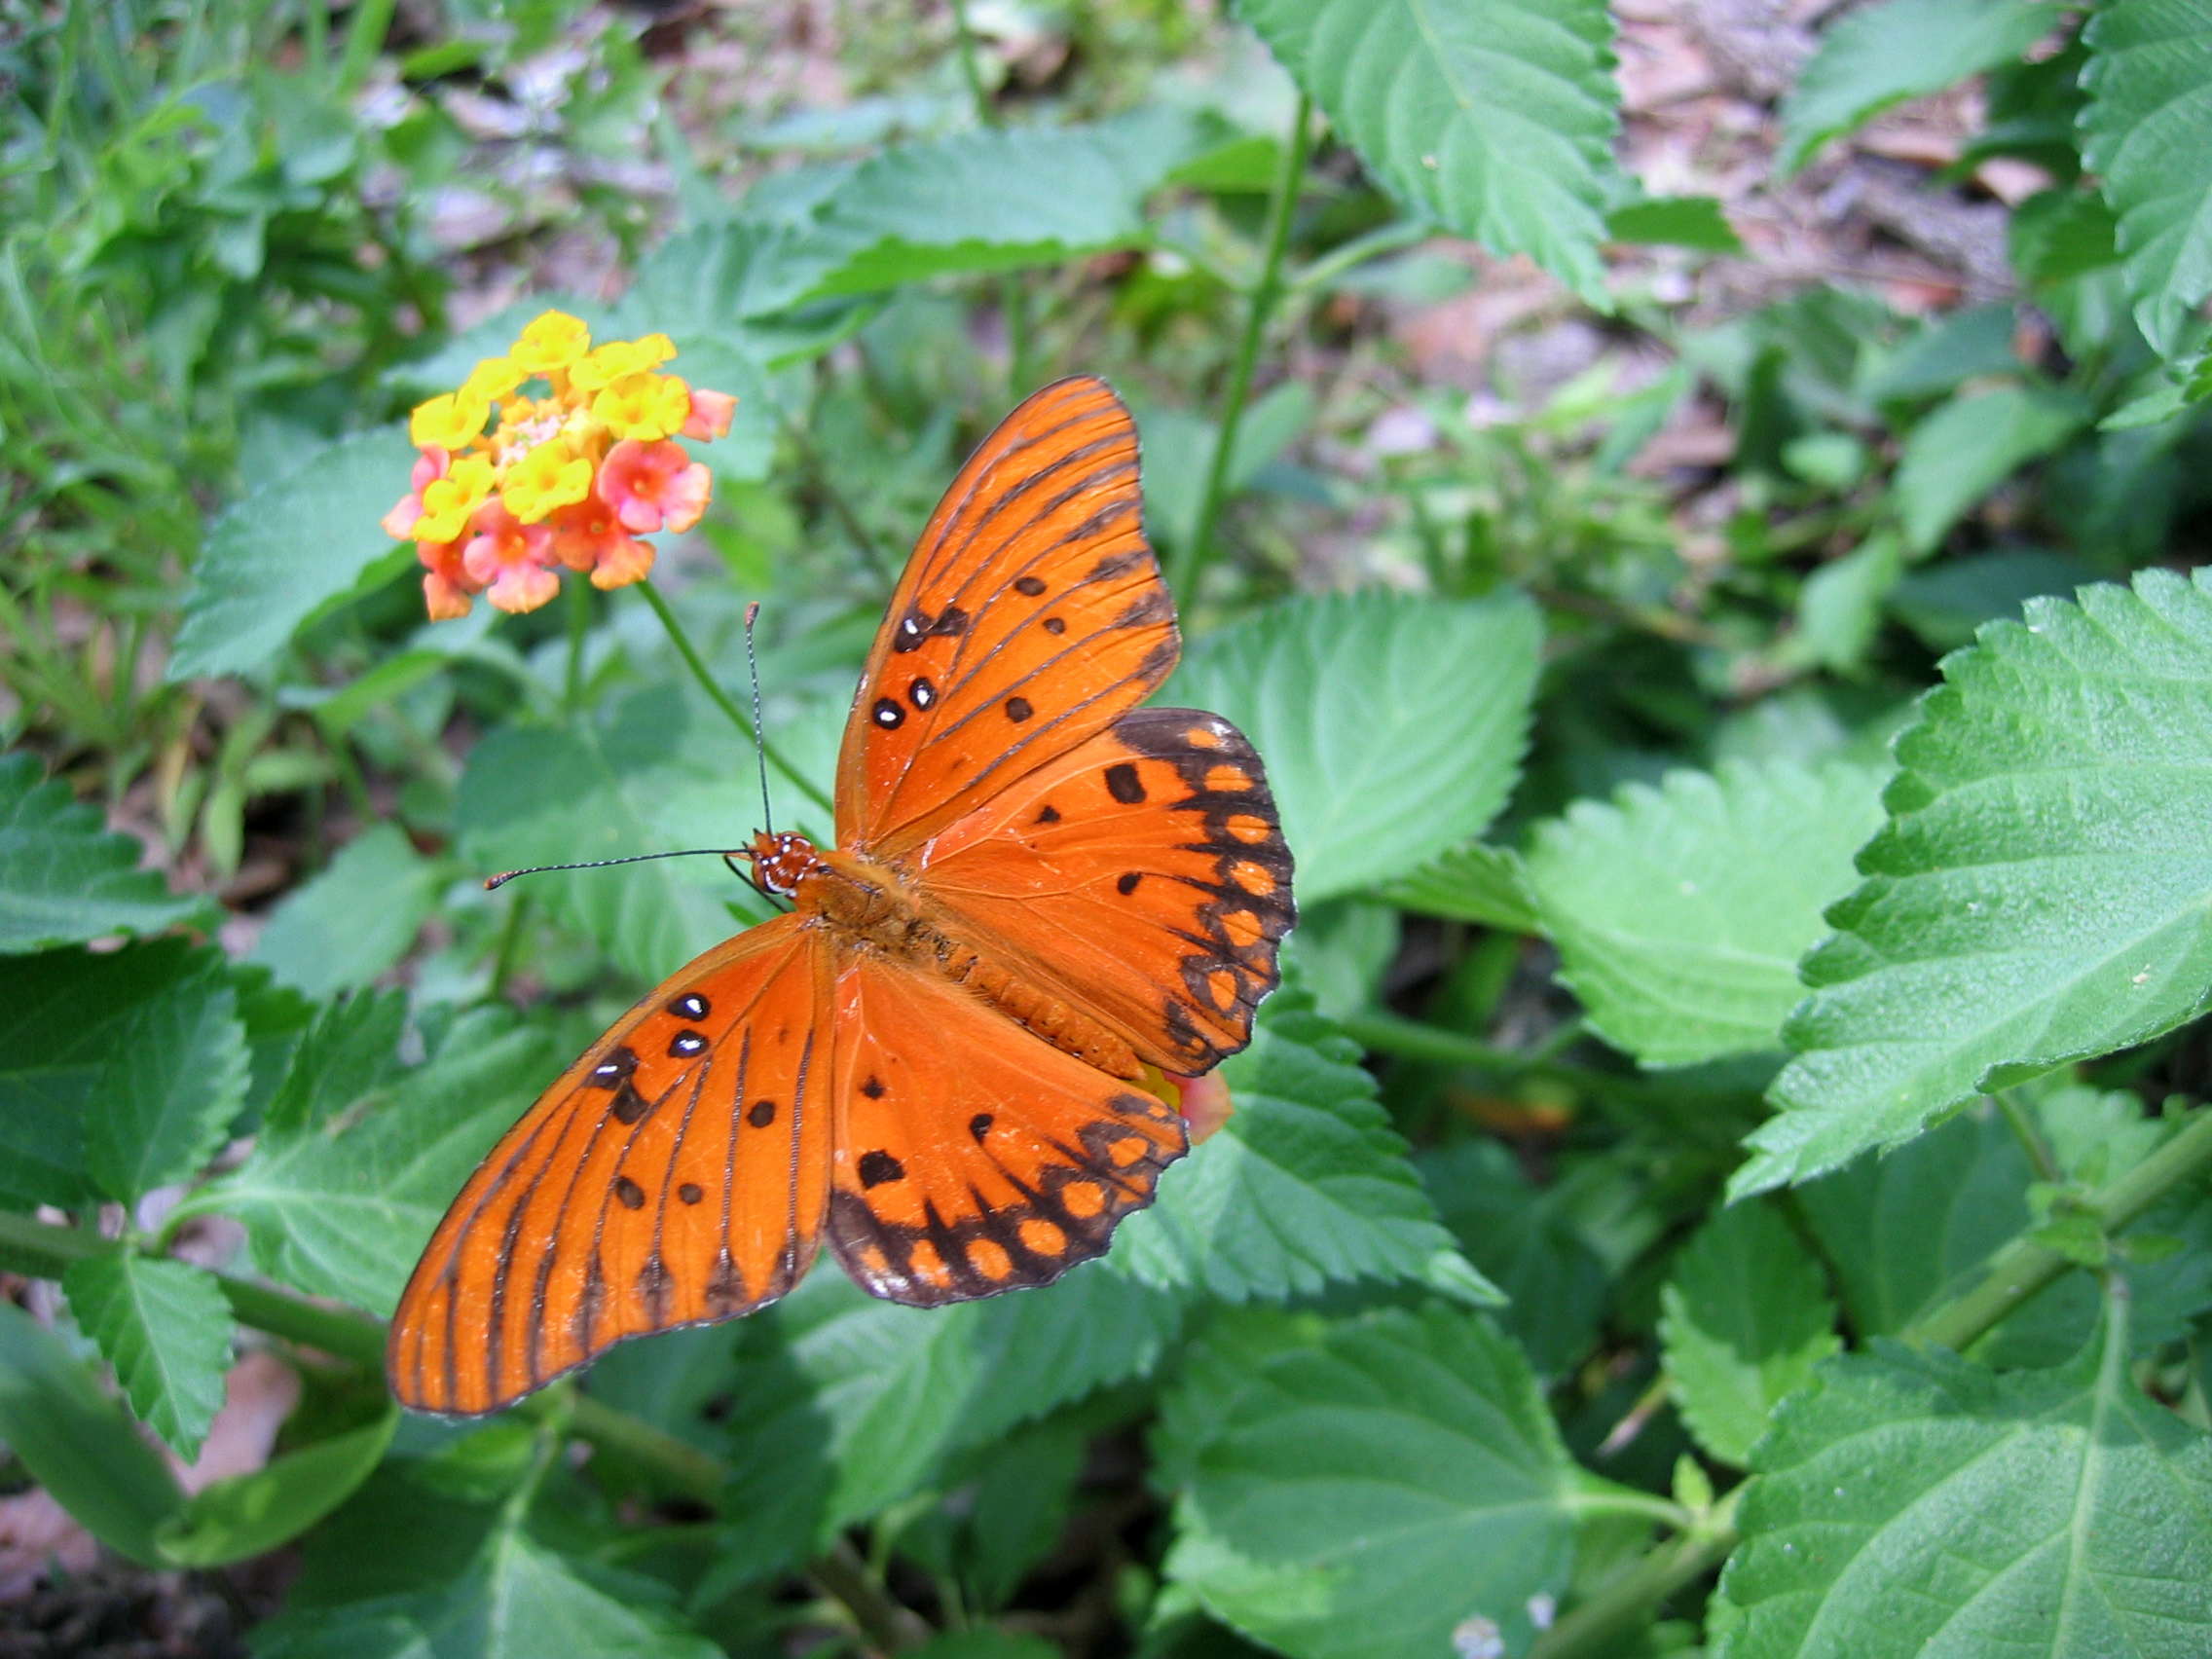 File:Gulf Fritillary Butterfly on a Lantana 17.jpg - Wikimedia Commons